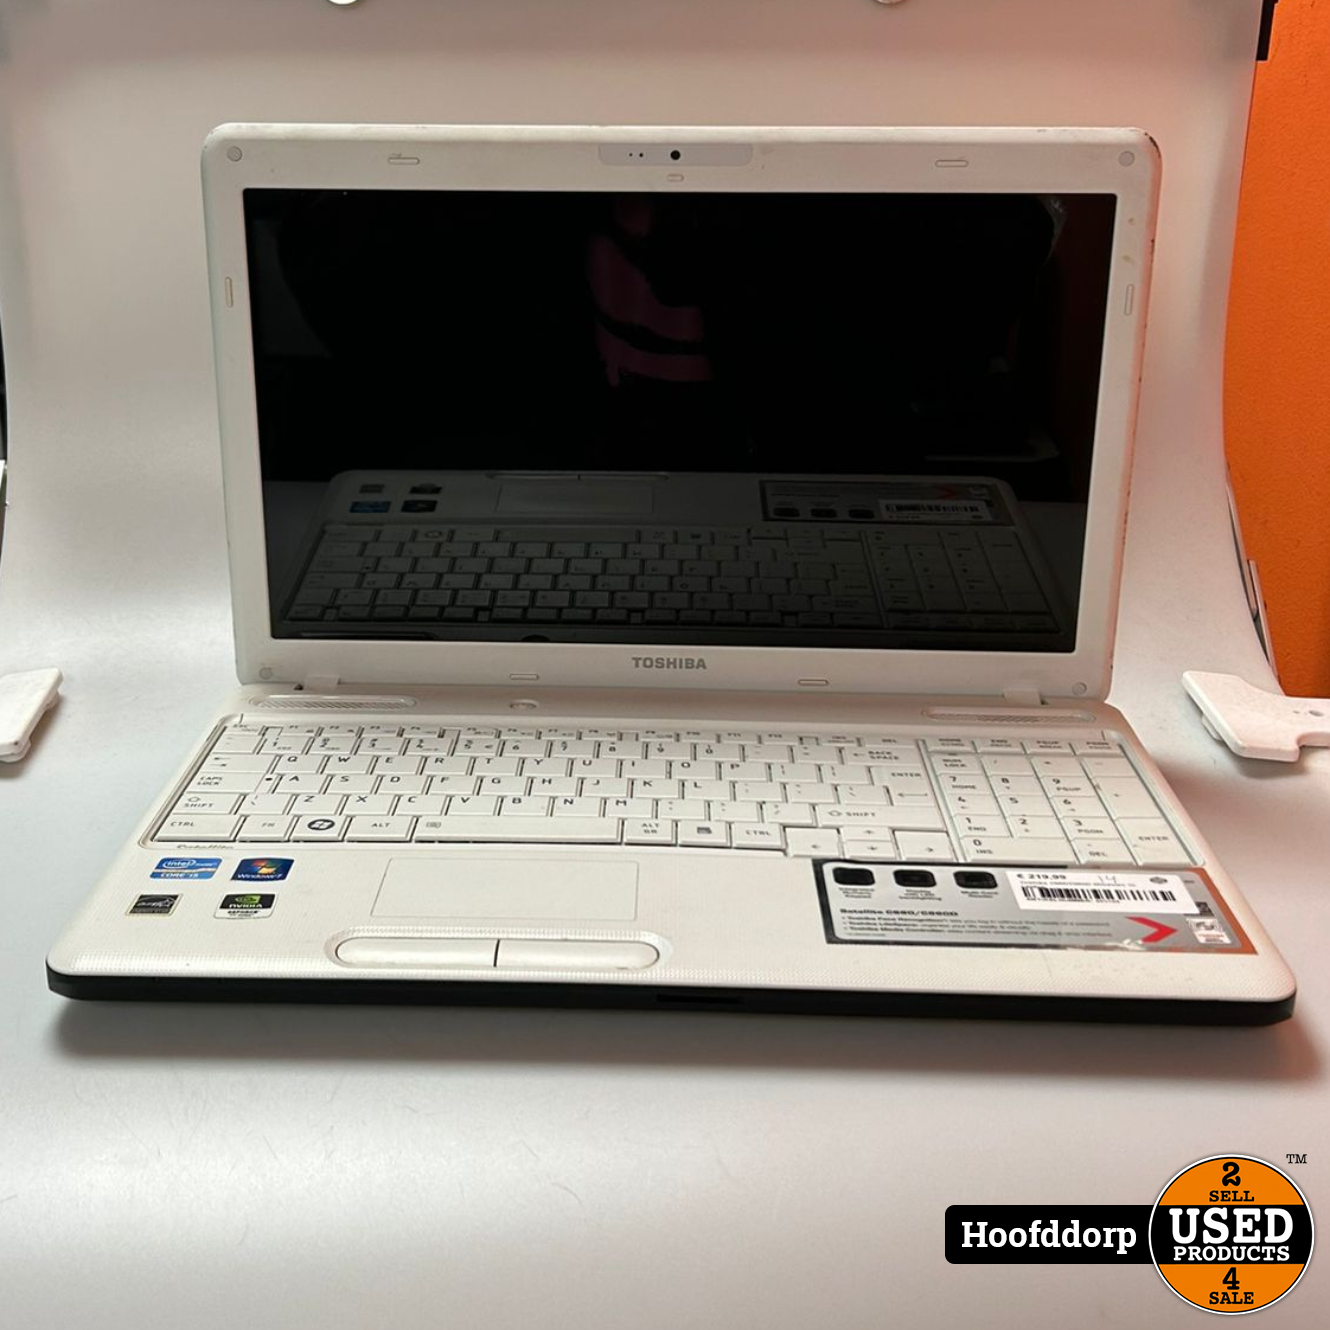 stad studie Verpersoonlijking Toshiba C660/C660D Windows 10 Laptop - Used Products Hoofddorp